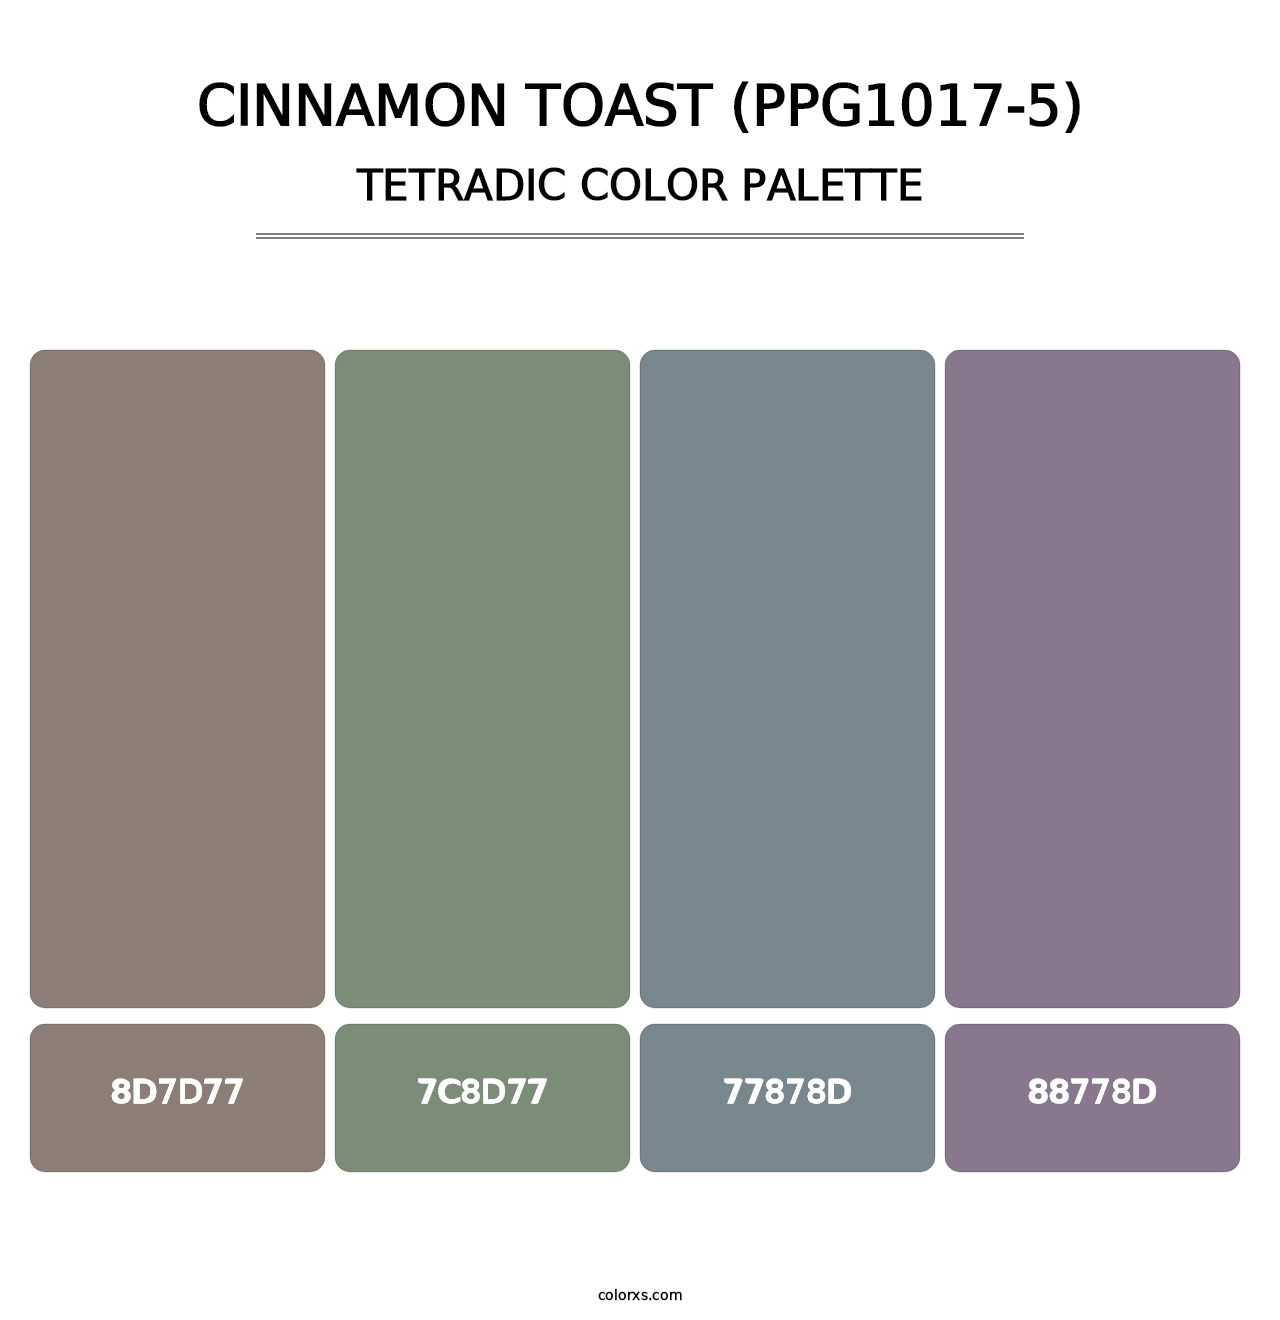 Cinnamon Toast (PPG1017-5) - Tetradic Color Palette